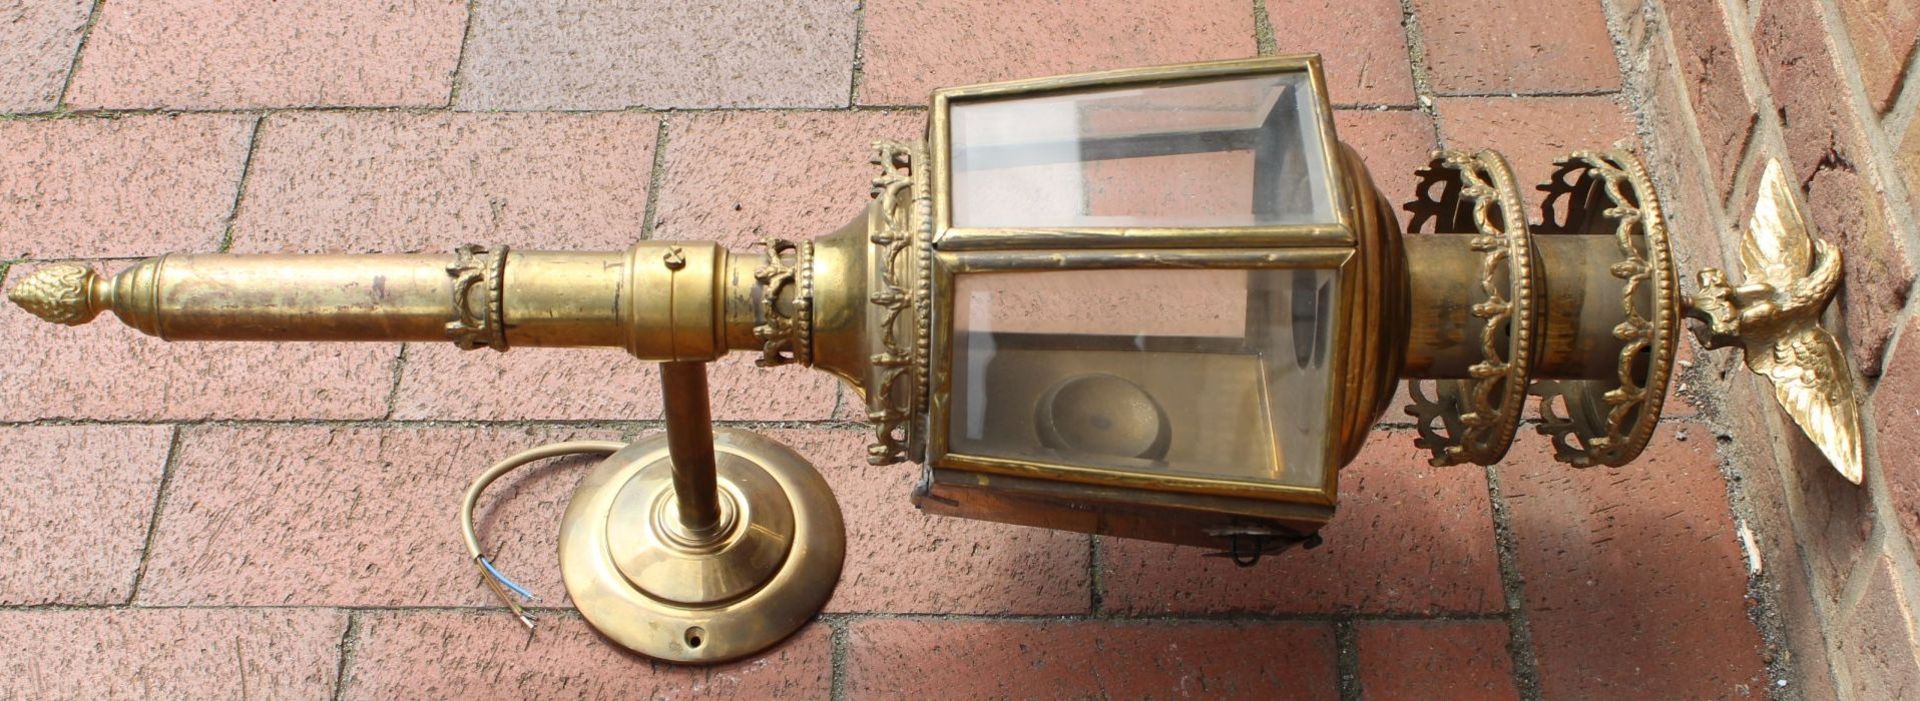 grosse, massive Kutschenlampe, Messing/Bronze, H-75 cm, B-28 cm, elektrisch, guter Zustand - Bild 7 aus 9